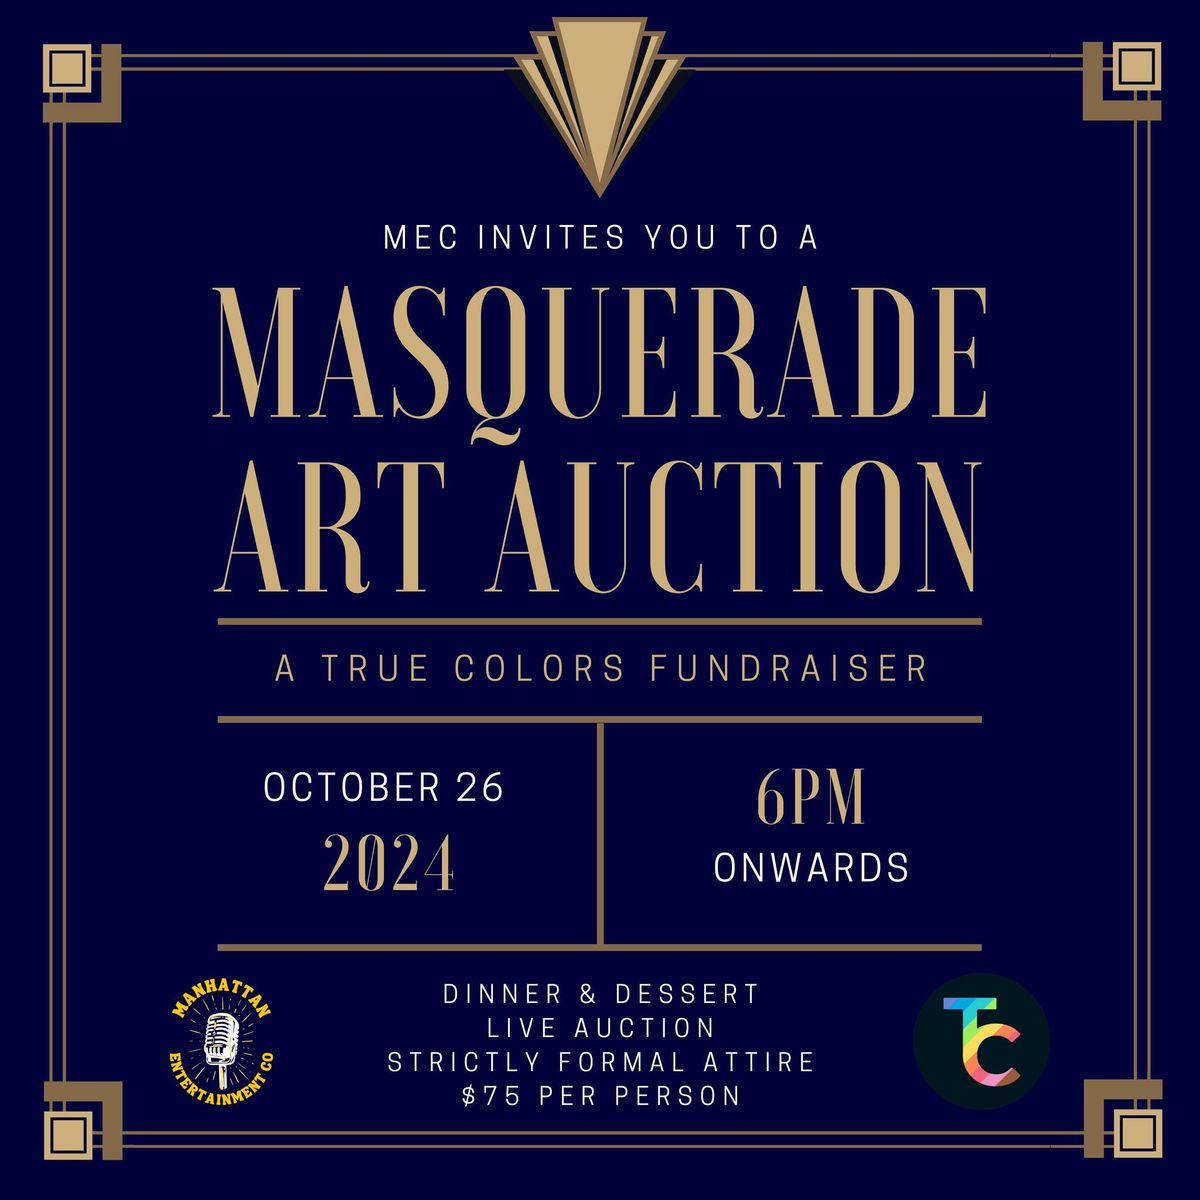 Masquerade Art Auction Fundraiser